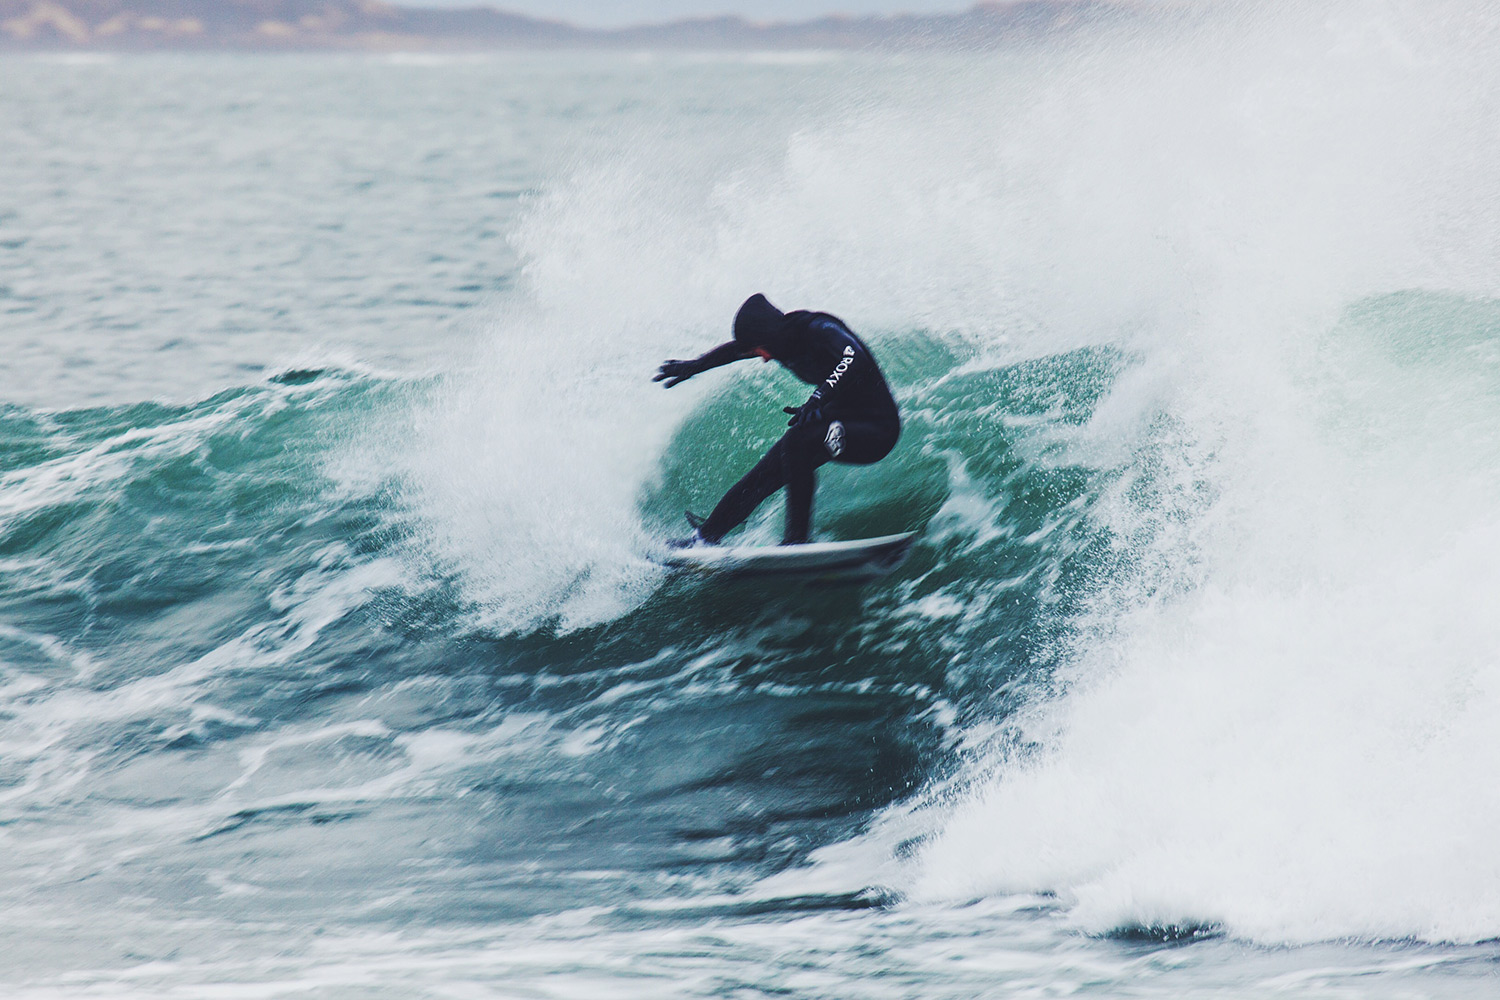 Surfing Iceland with Lee-Ann Curren